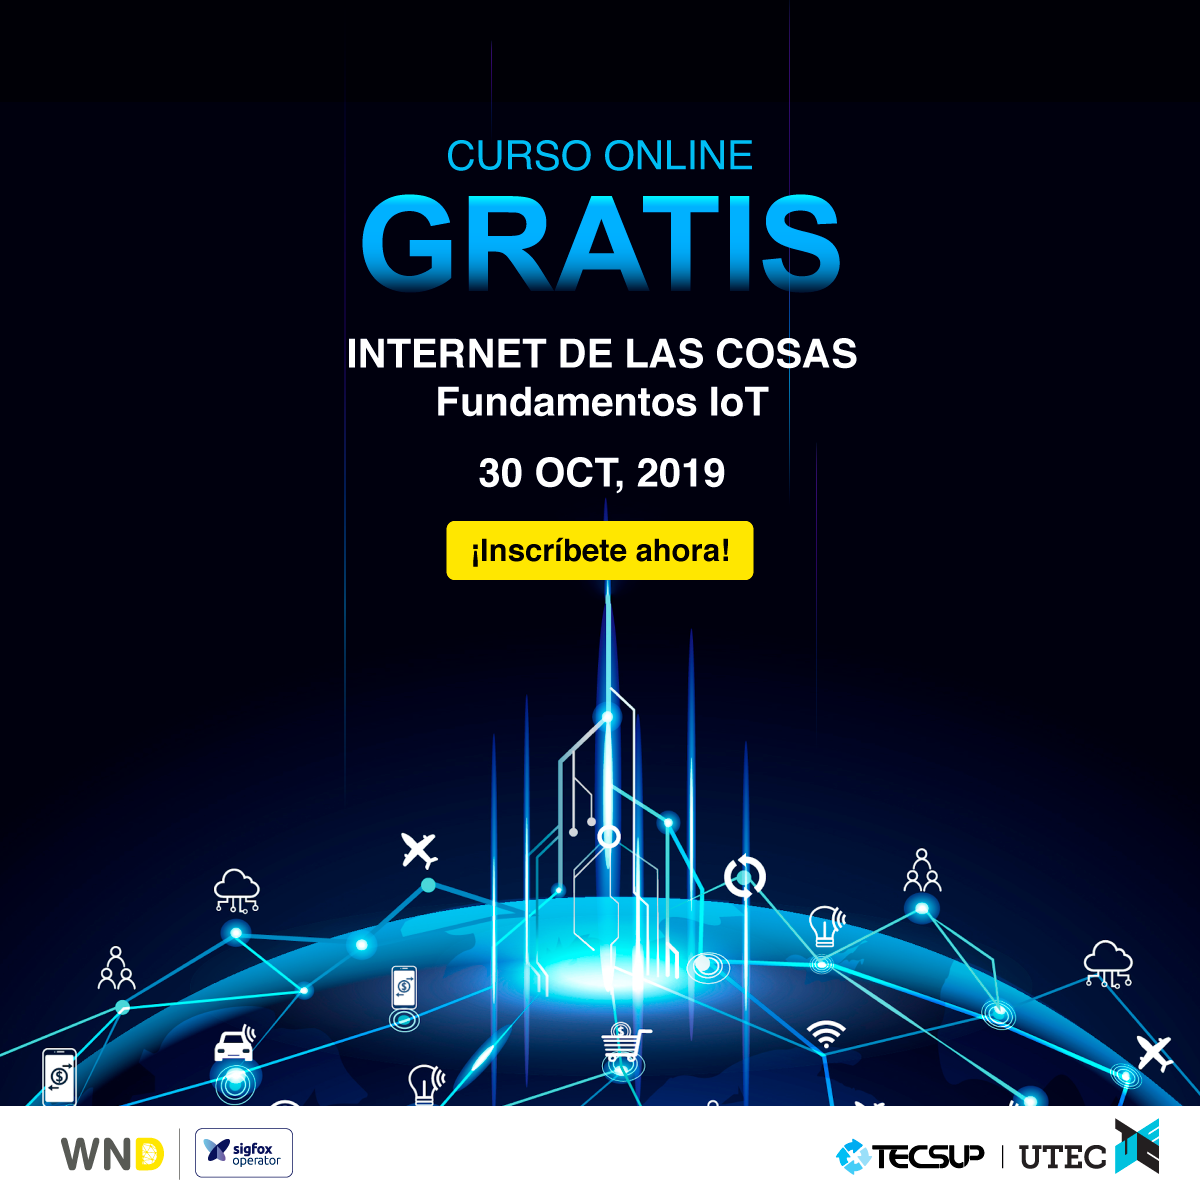 #WND, operador de @Sigfox, en alianza con #Tecsup y #UTEC lanza el curso virtual gratuito “Internet de las Cosas: Fundamentos de IoT”